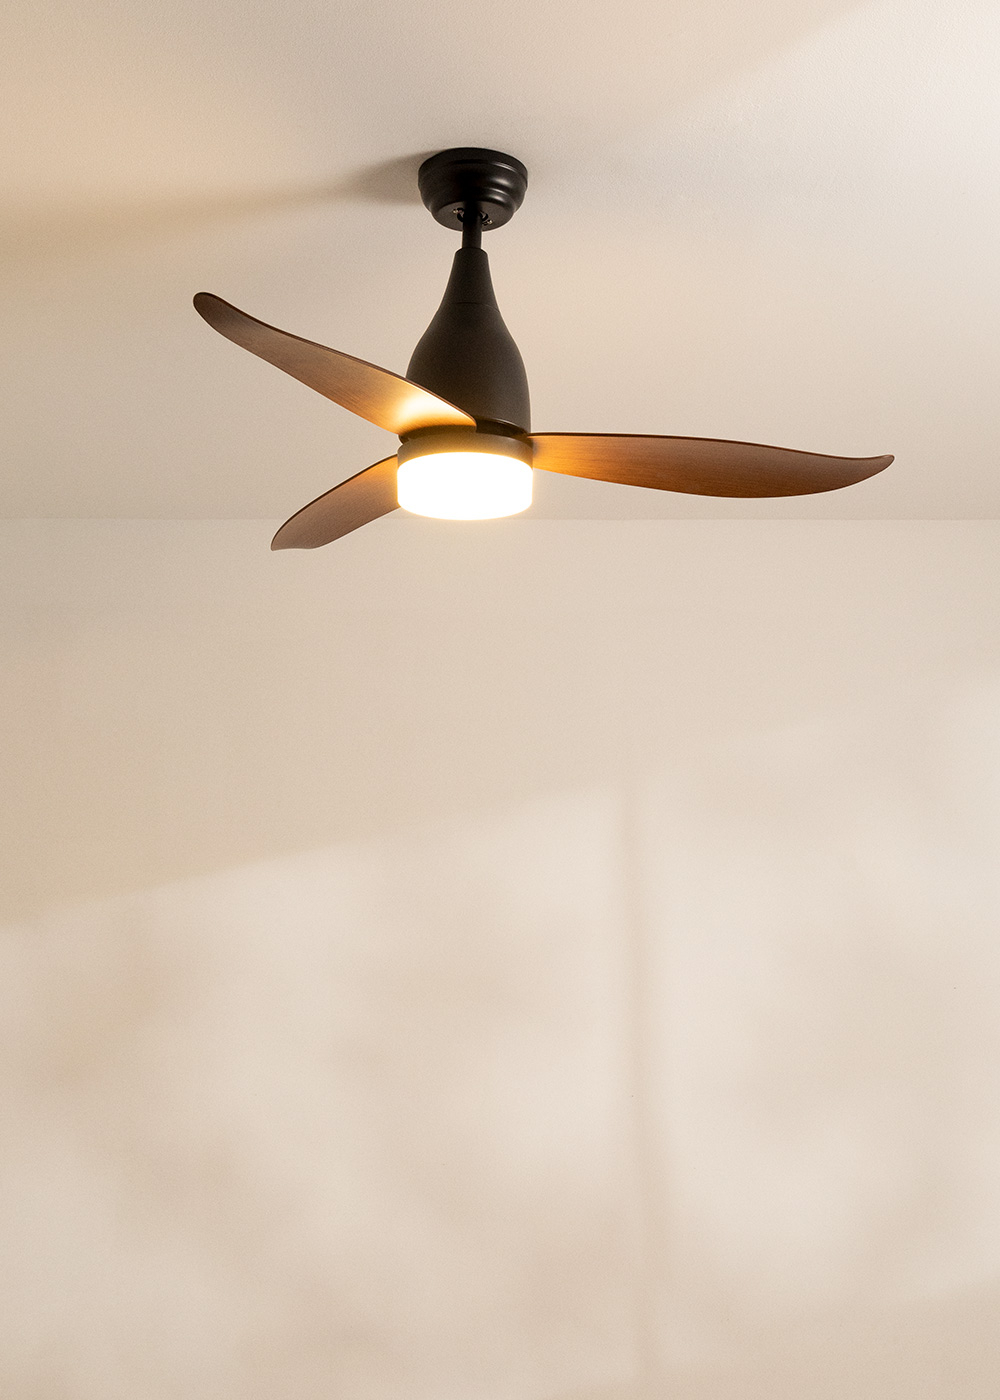 Este ventilador silencioso de techo con luz ya es el más vendido en